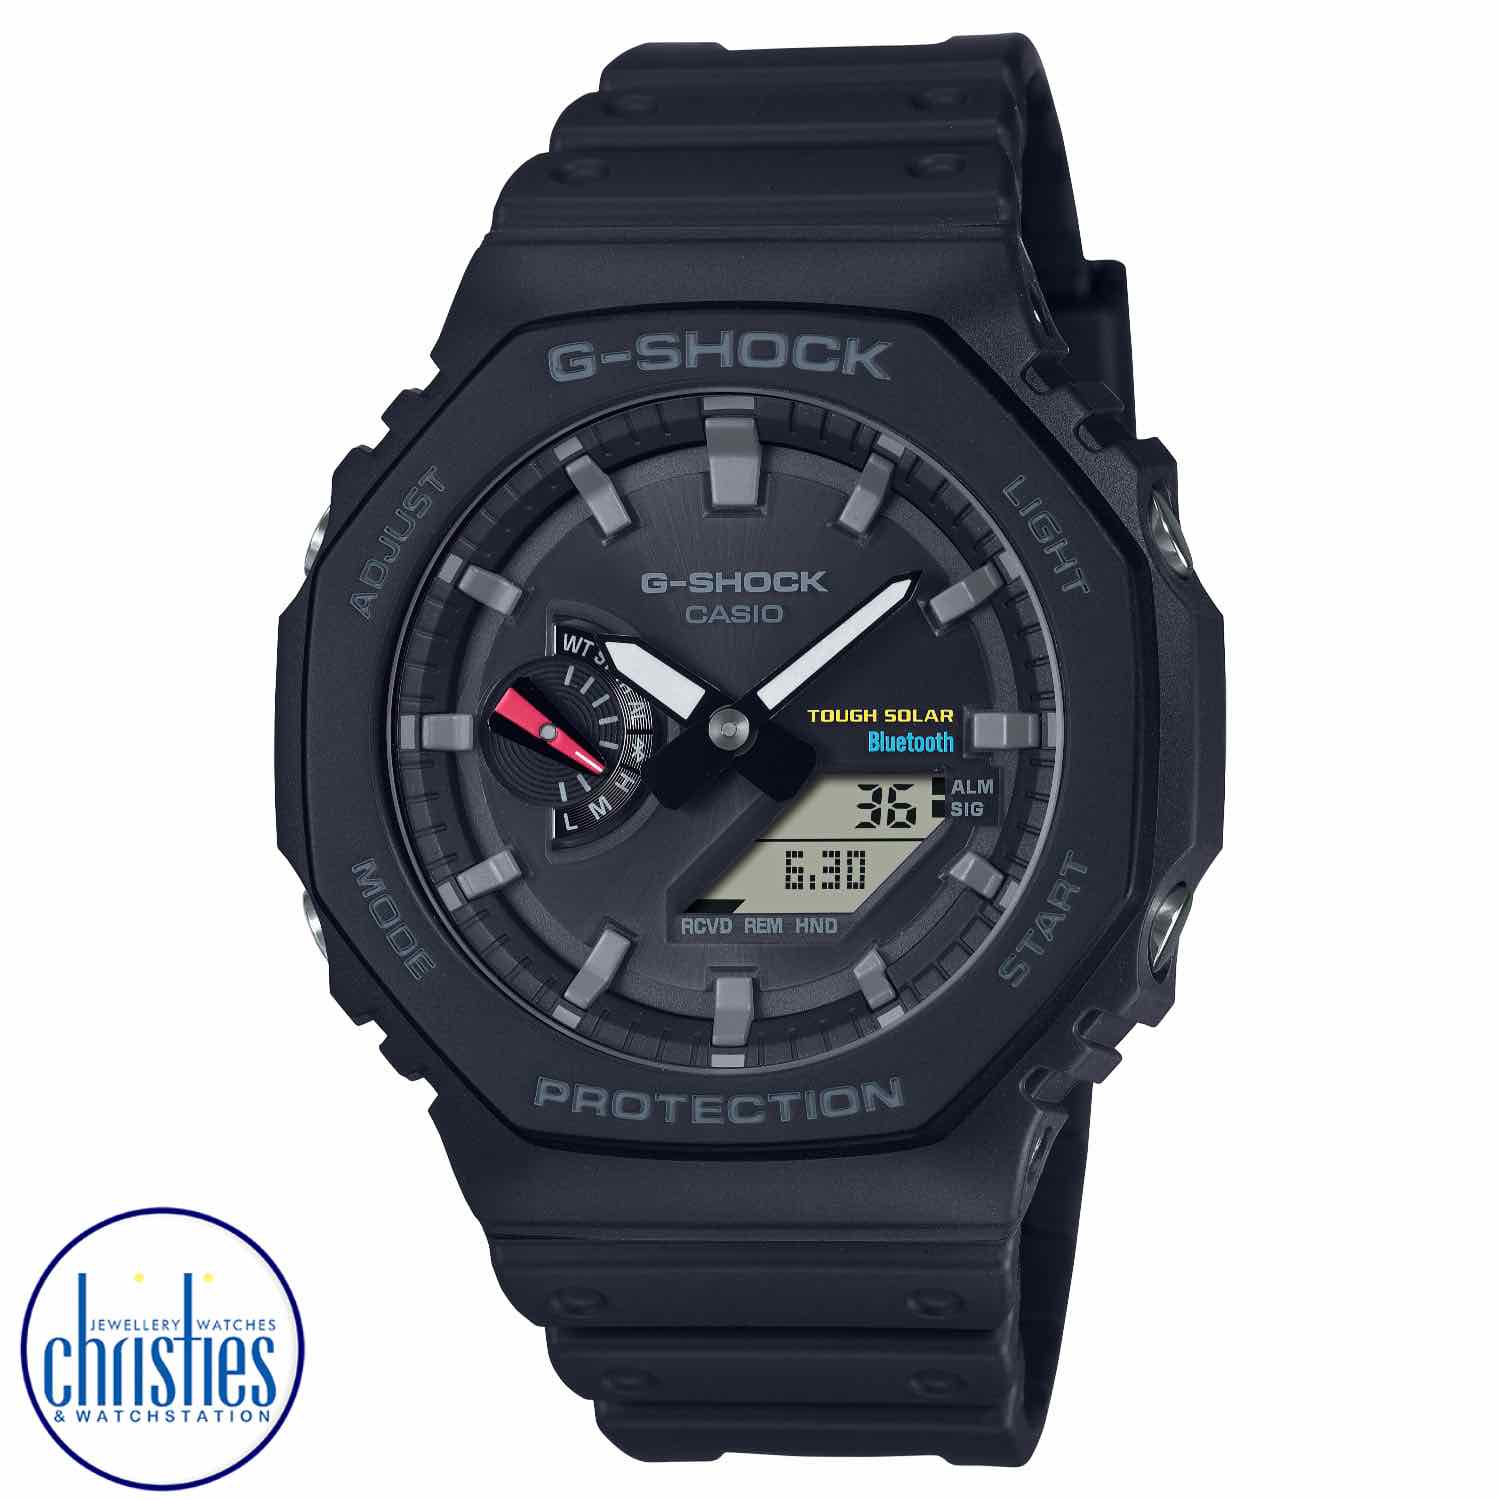 GAB2100-1A G-SHOCK Bluetooth Tough Solar Watch 